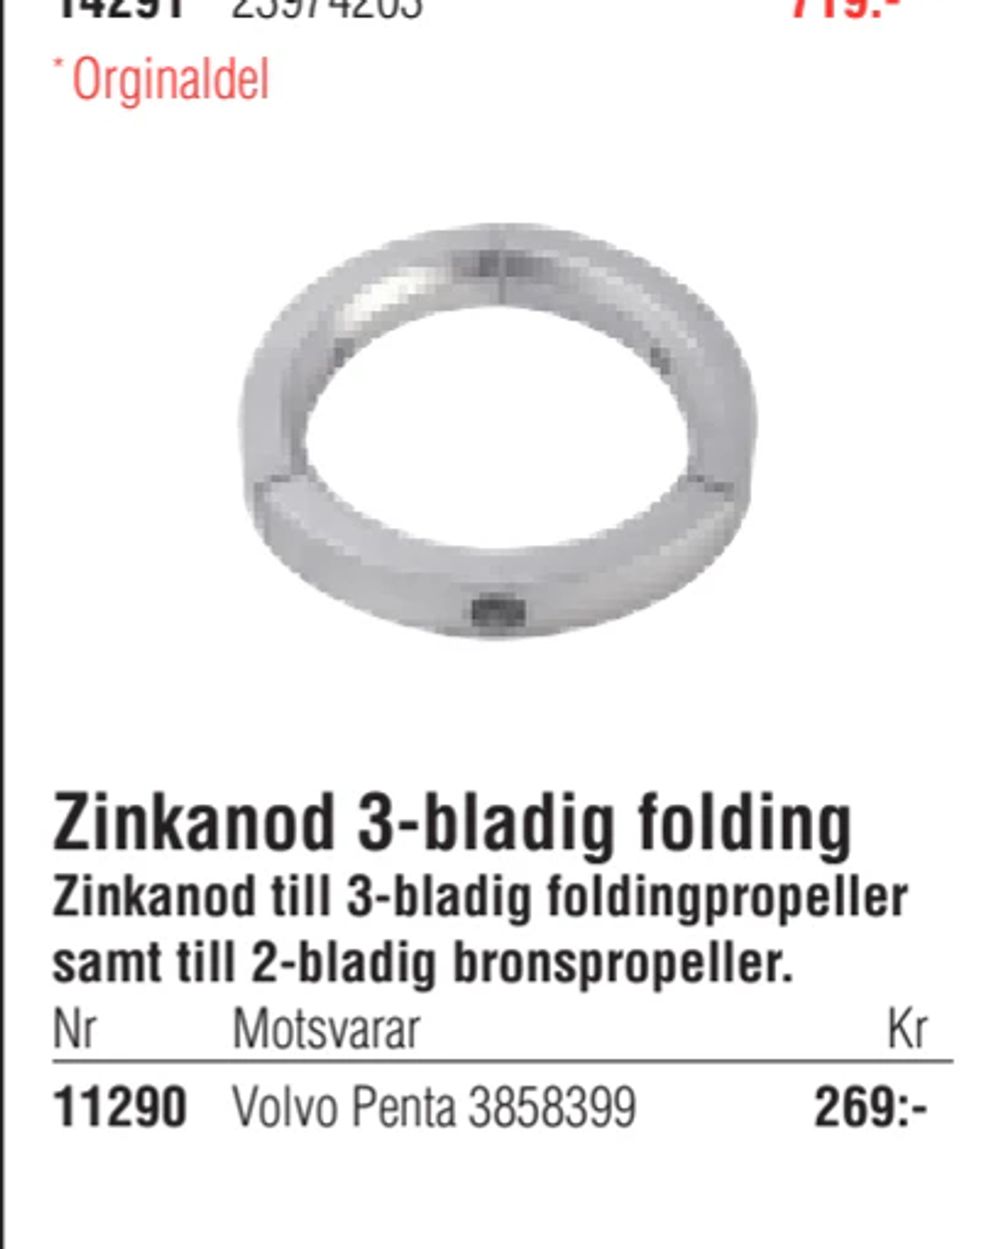 Erbjudanden på Zinkanod 3-bladig folding från Erlandsons Brygga för 269 kr